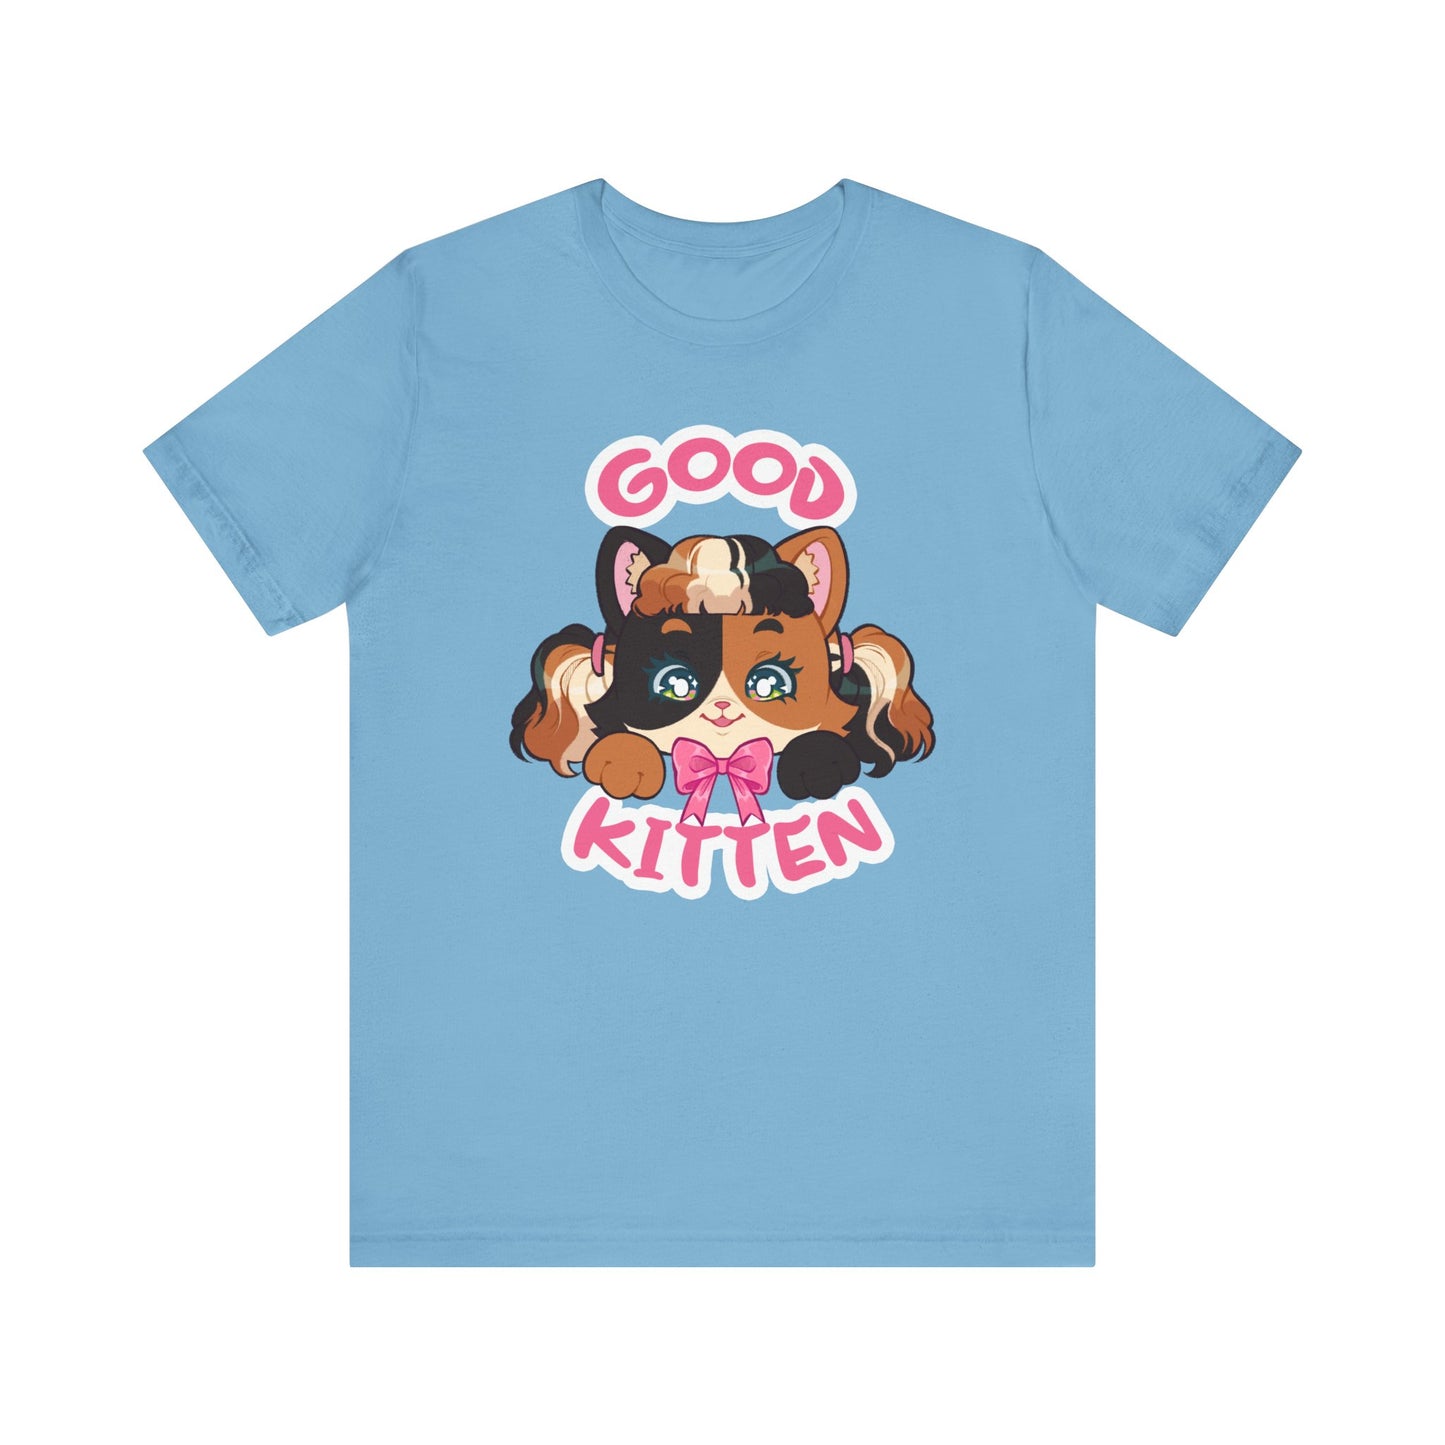 Good Kitten T-shirt